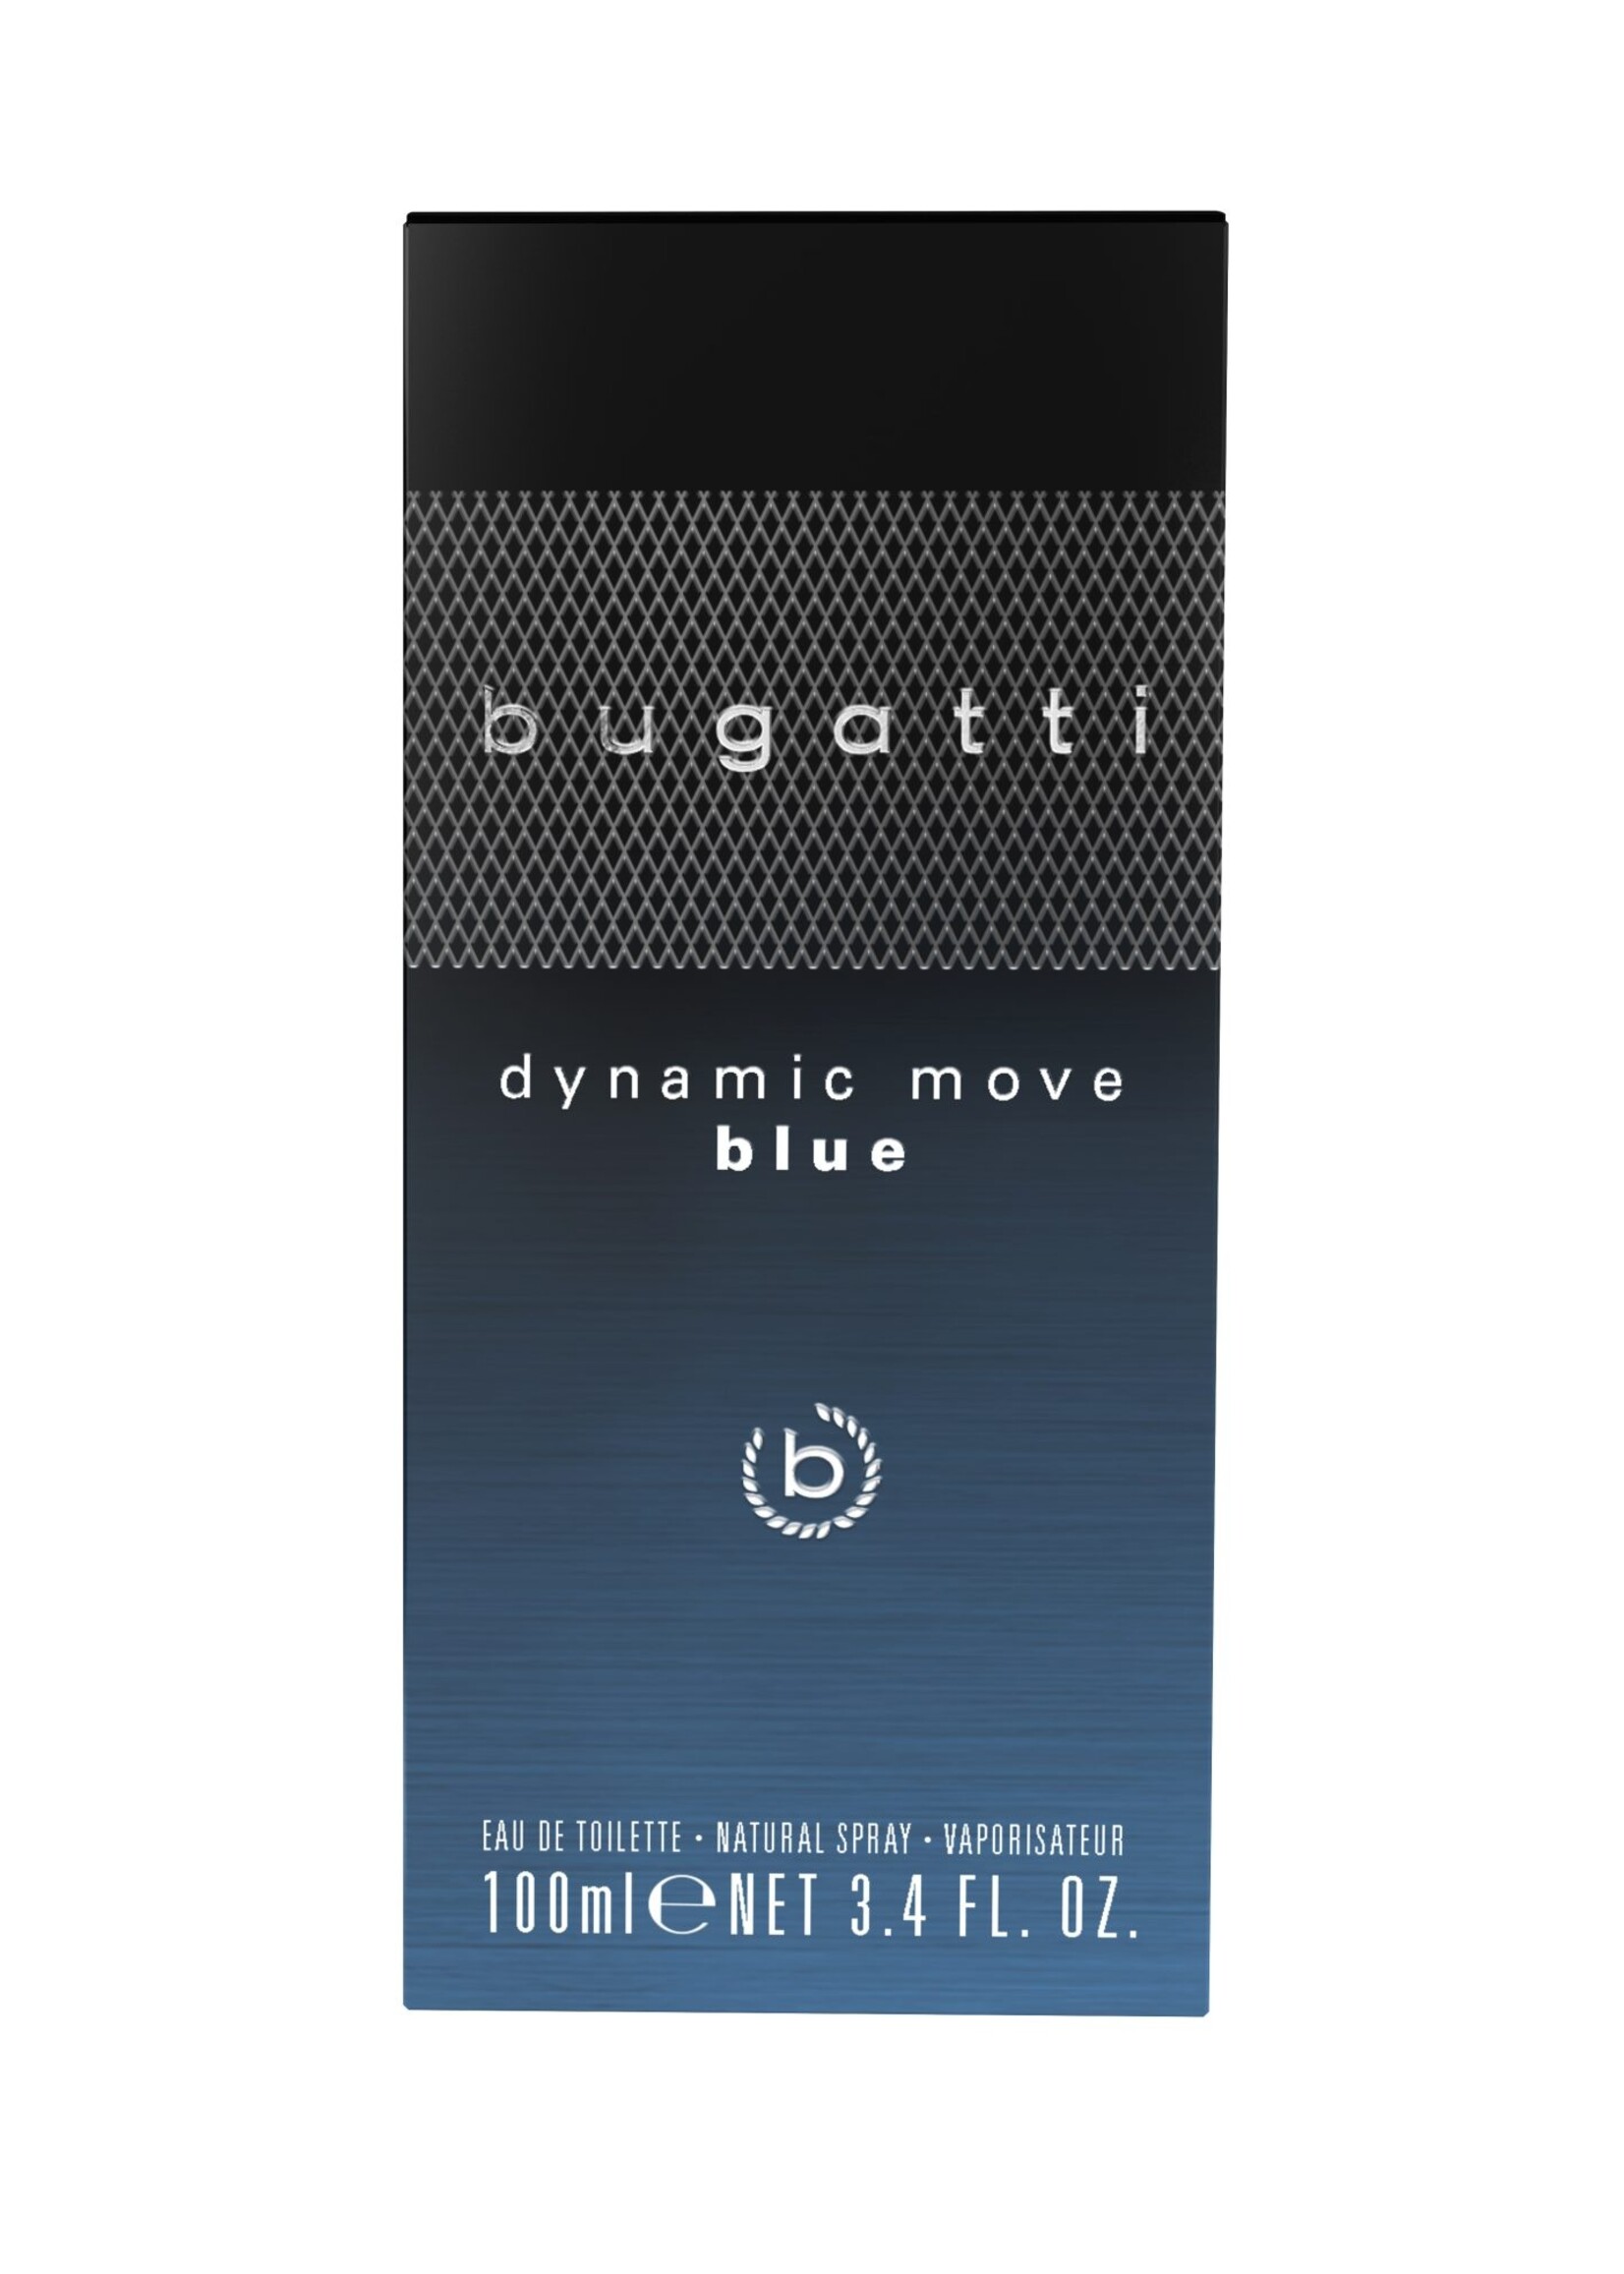 De Blue Marie-Rose for - by Dynamic Bugatti Move Eau Toilette Parfumerie parfums men